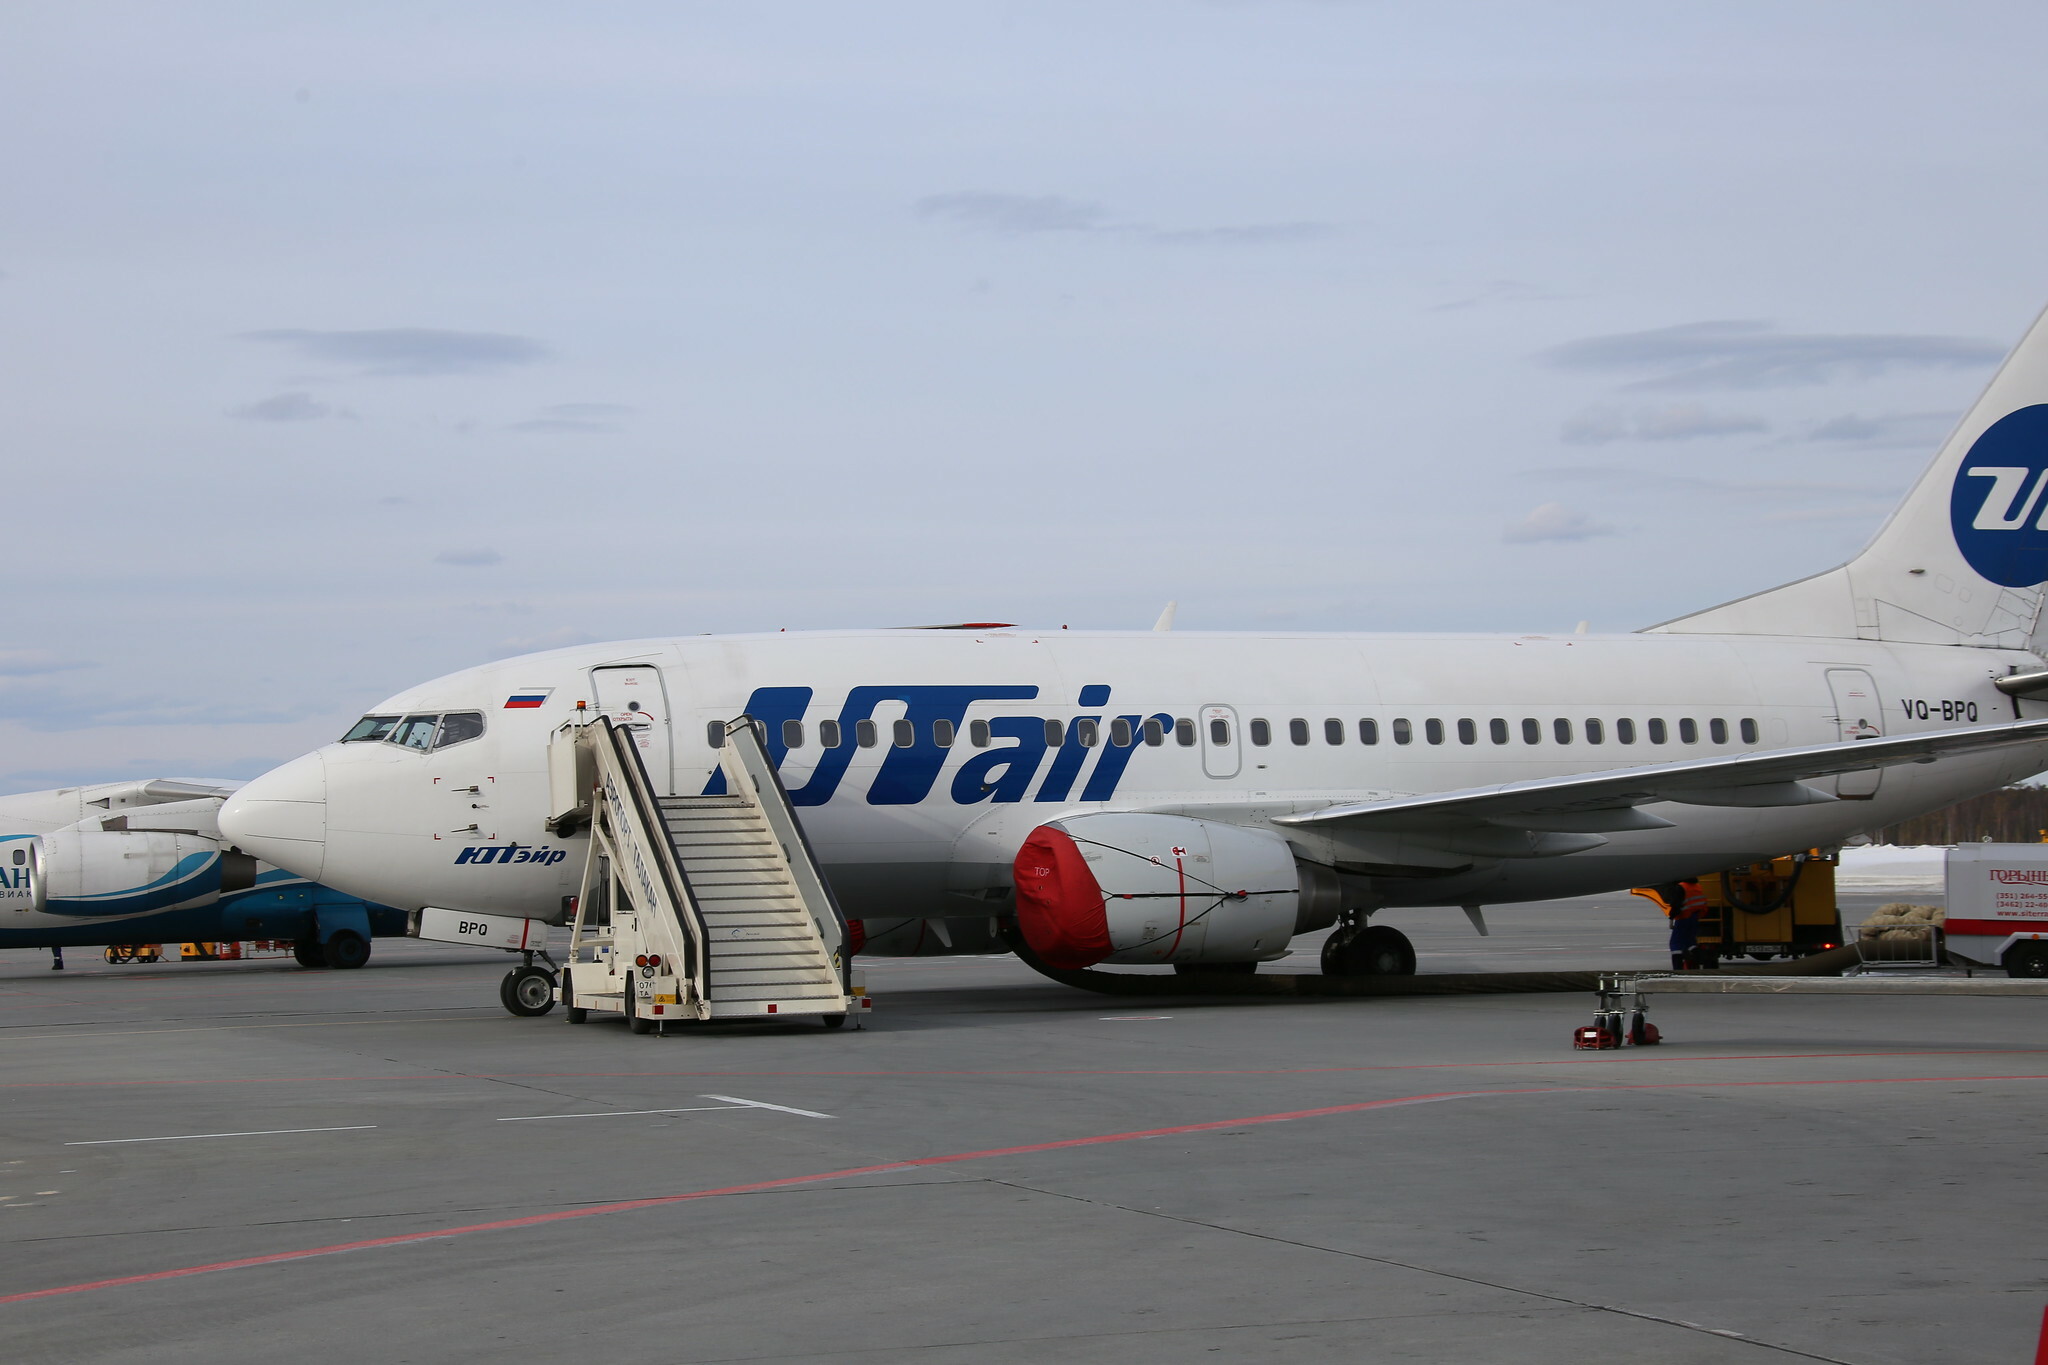 Московское микропредприятие начало процедуру банкротства авиакомпании Utair